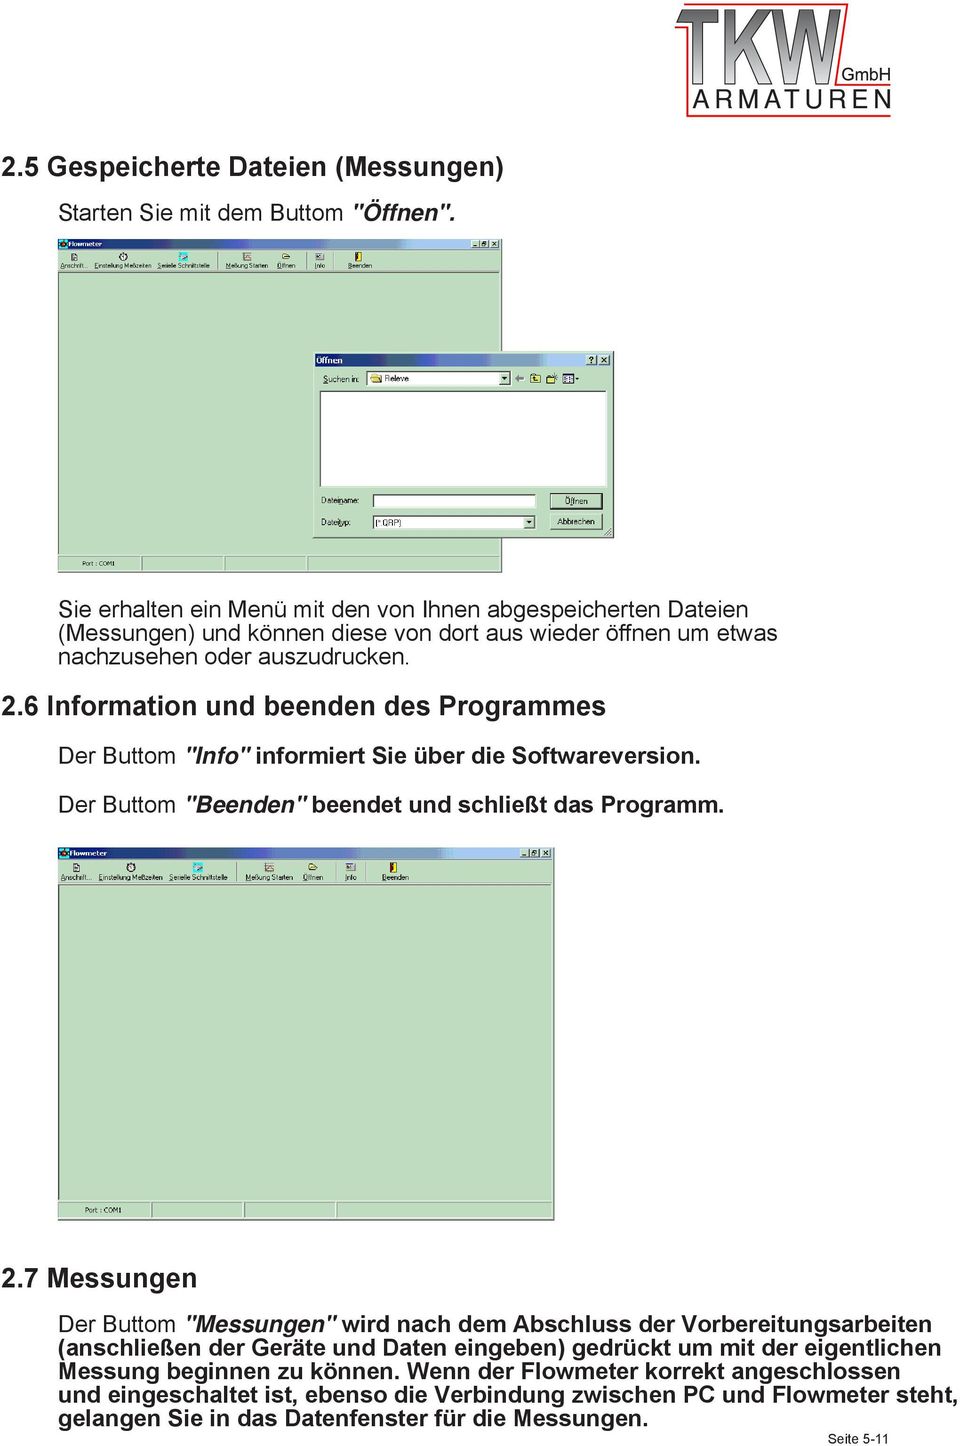 6 Information und beenden des Programmes Der Buttom "Info" informiert Sie über die Softwareversion. Der Buttom "Beenden" beendet und schließt das Programm. 2.